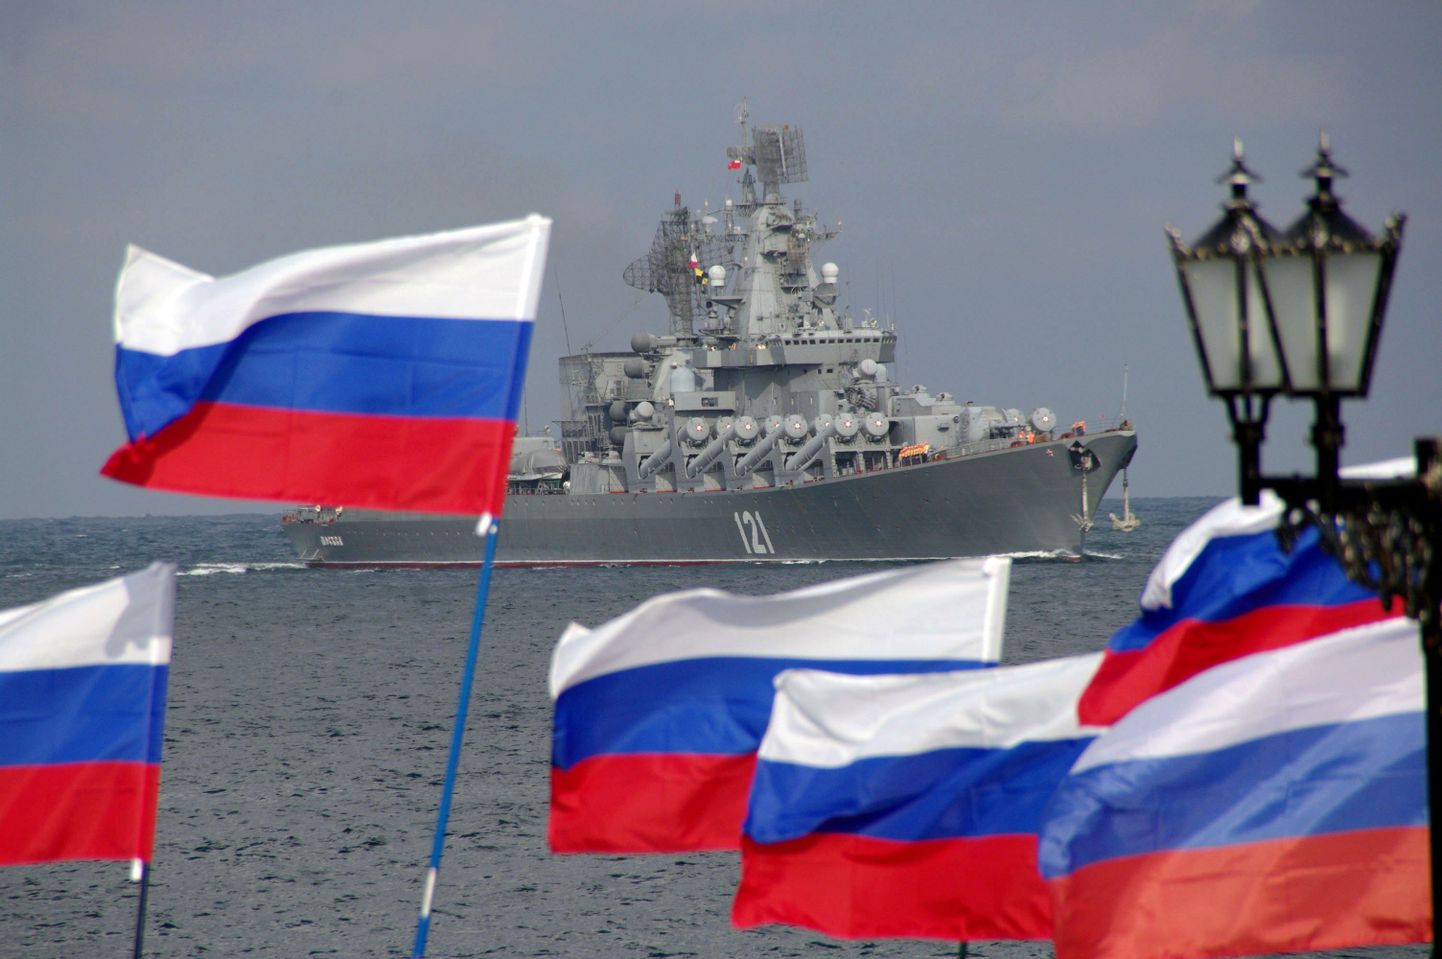 Venemaa sõjalaev Ukraina vetes.